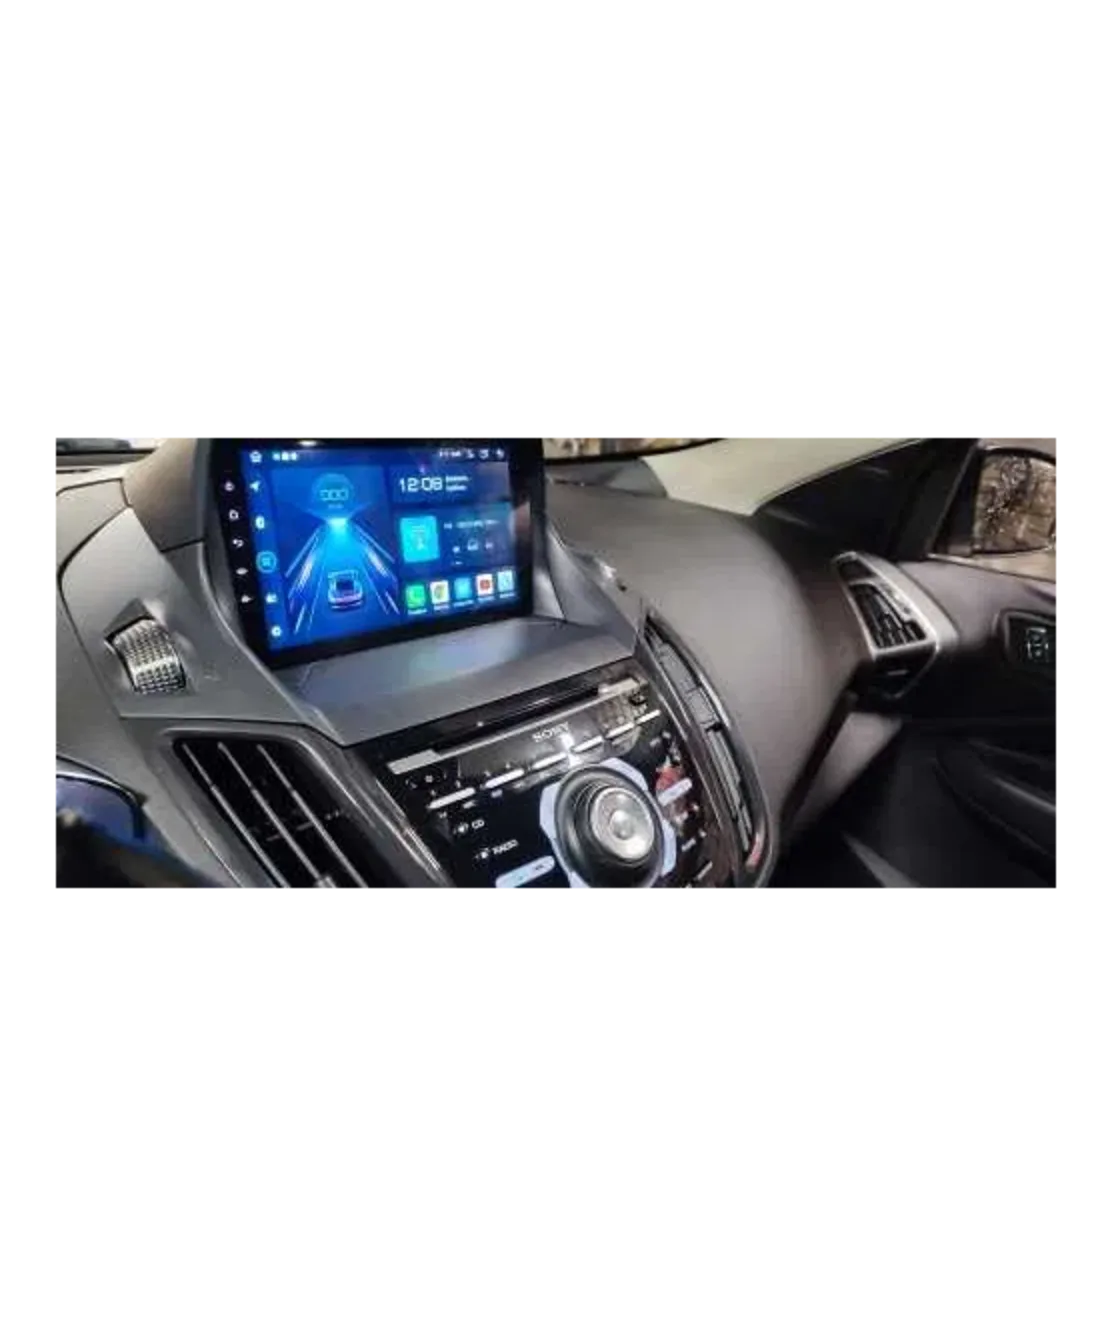 Ford Kuga 2013- 2016 Android Multimedia/Navigation